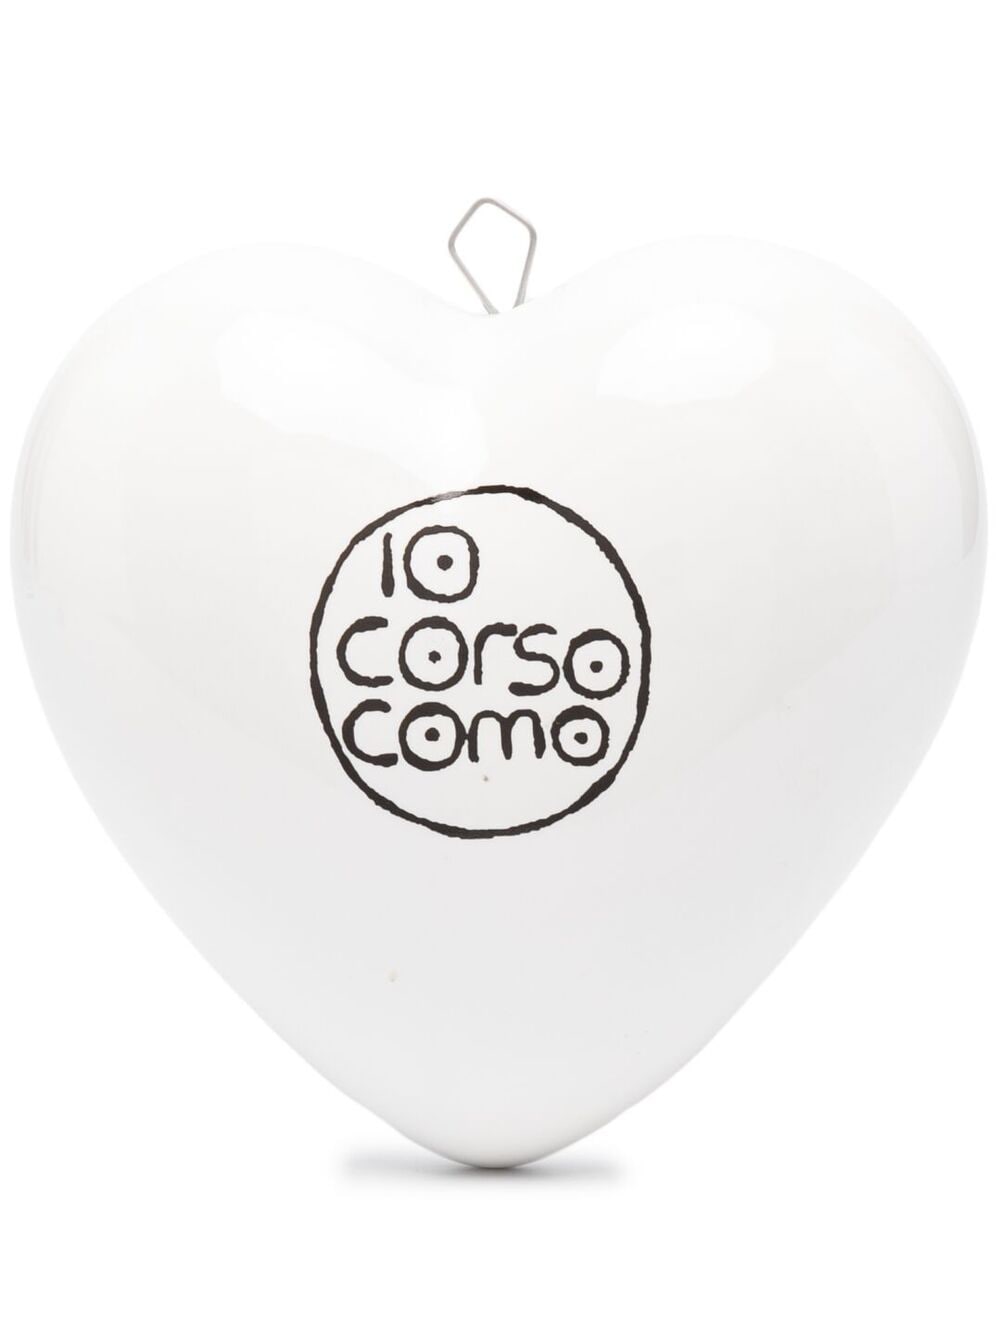 10 CORSO COMO Klassischer Briefbeschwerer - Weiß von 10 CORSO COMO